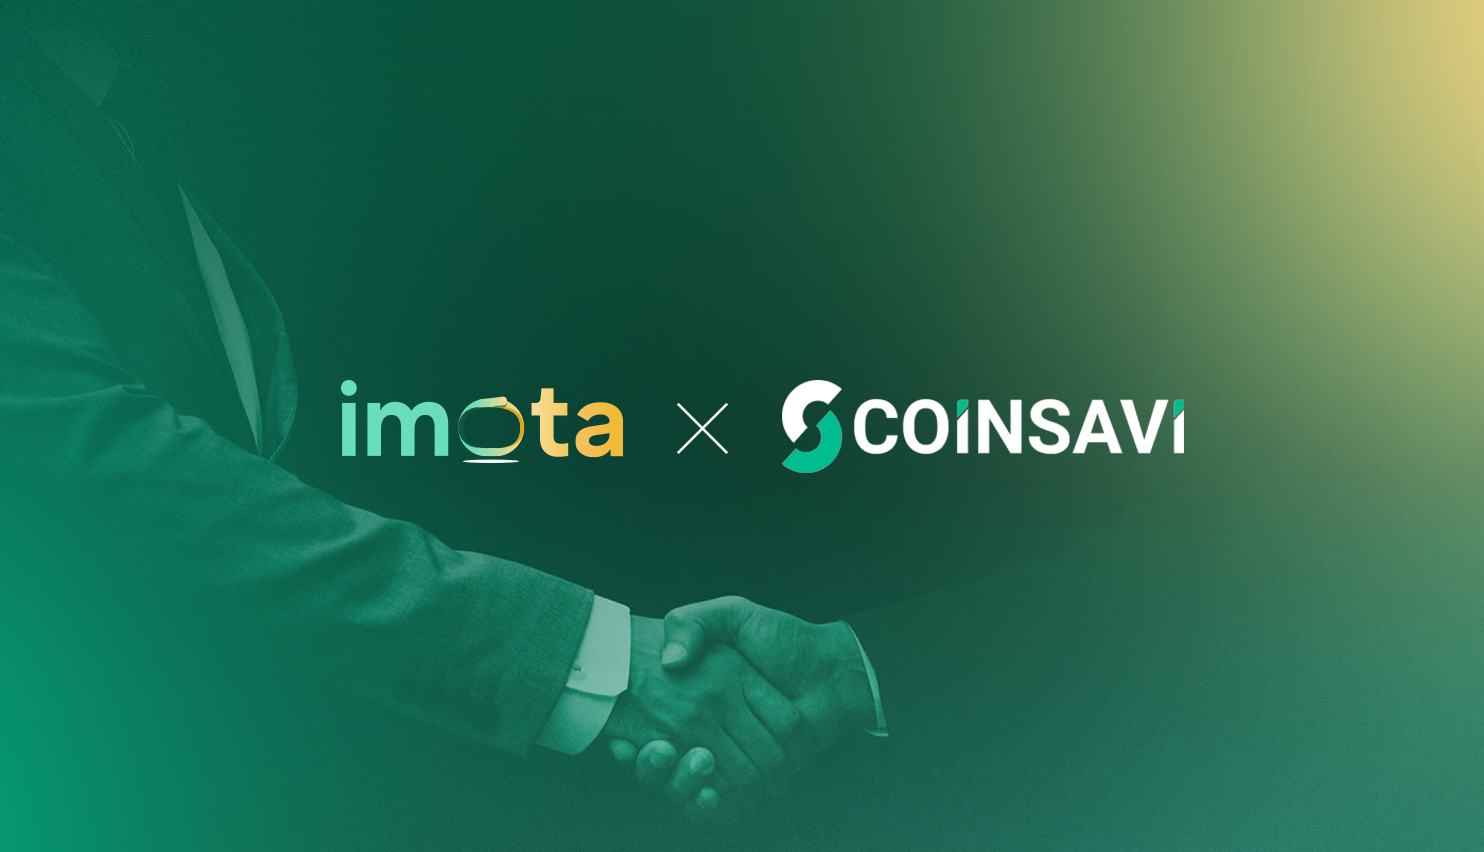 Thông báo hợp tác: Imota chính thức bắt tay cùng sàn giao dịch Coinsavi trong cuộc cách mạng thu nhập phi tập trung